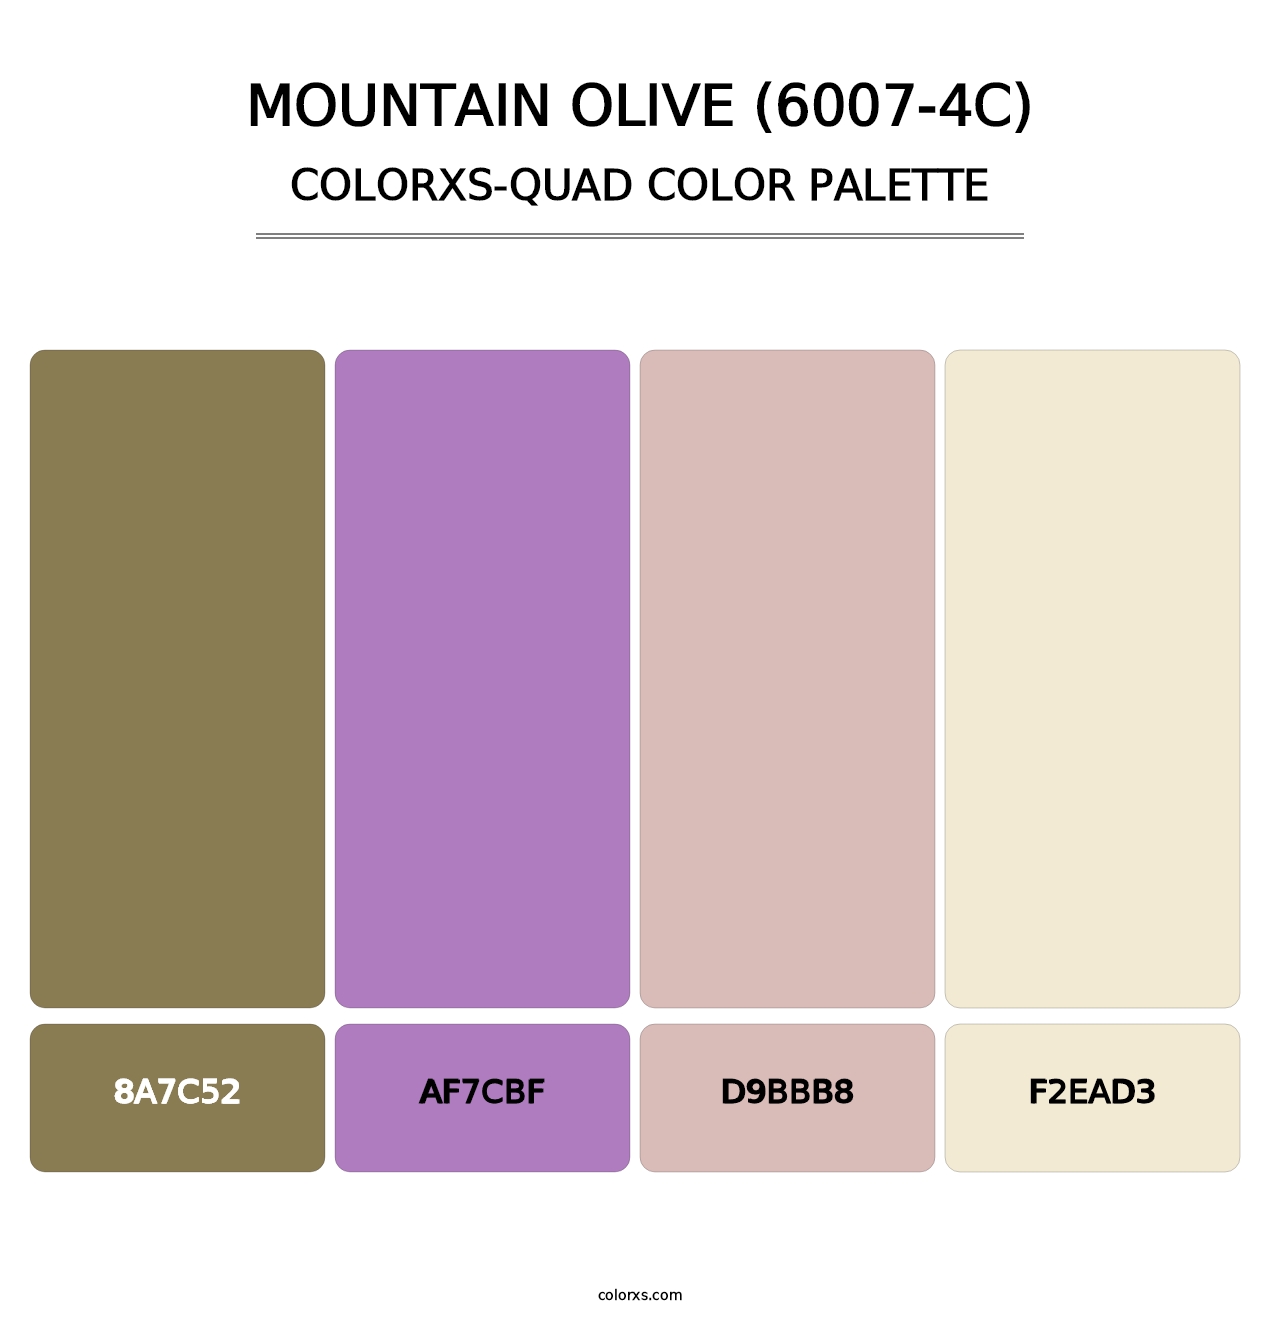 Mountain Olive (6007-4C) - Colorxs Quad Palette